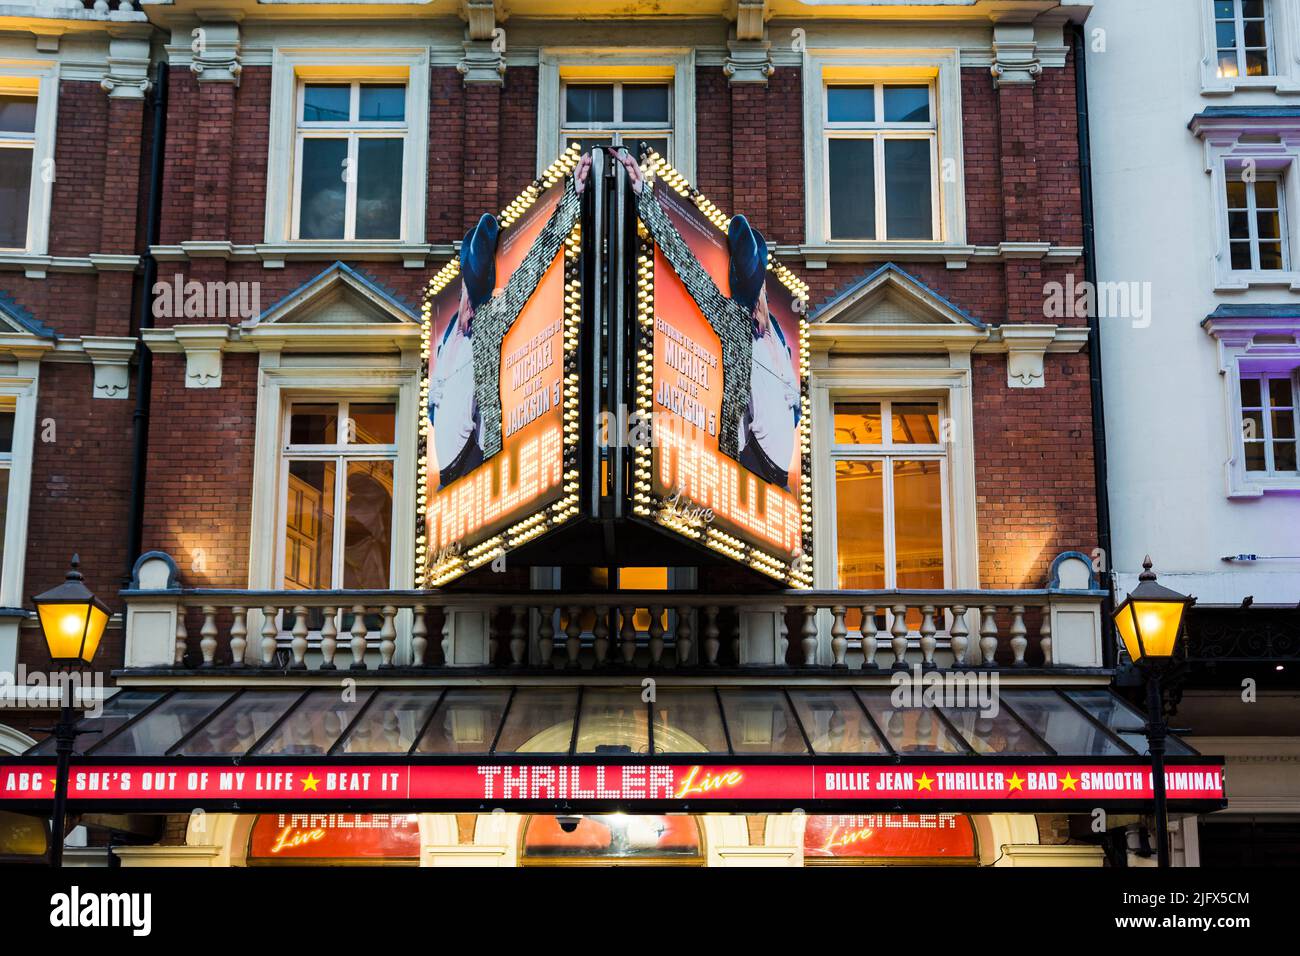 Le Lyric Theatre est un théâtre du West End sur Shaftesbury Avenue dans la ville de Westminster. Thriller Live. Londres, Angleterre, Royaume-Uni Banque D'Images